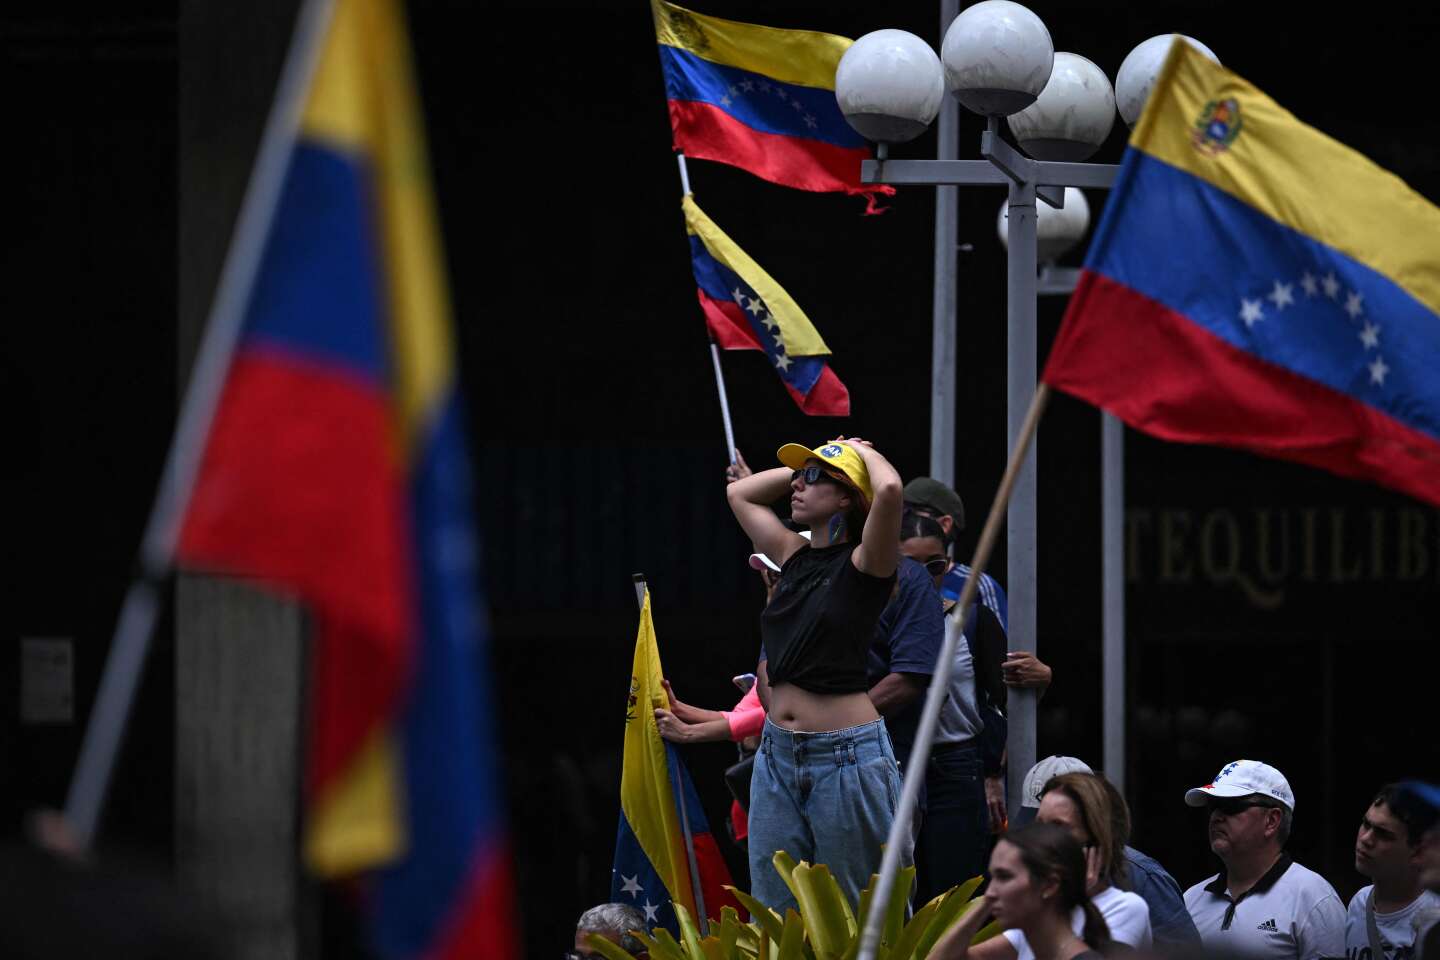 Nicolas Maduro déclaré vainqueur de l’élection présidentielle au Venezuela : la communauté internationale accentue la pression pour que les résultats détaillés soient publiés